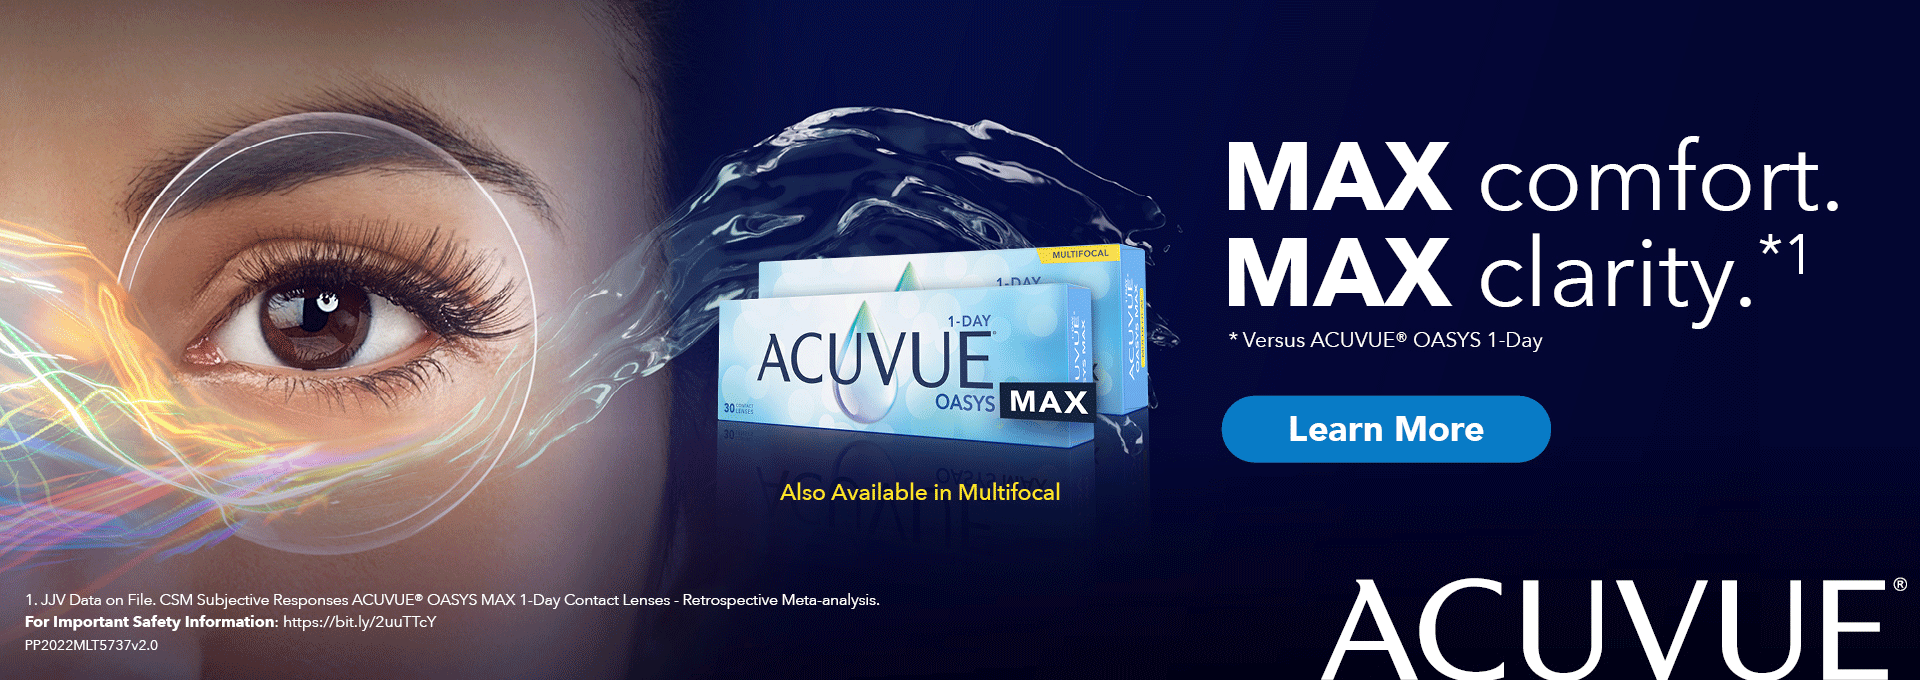 Acuvue - MAX comfort.
MAX clarity.